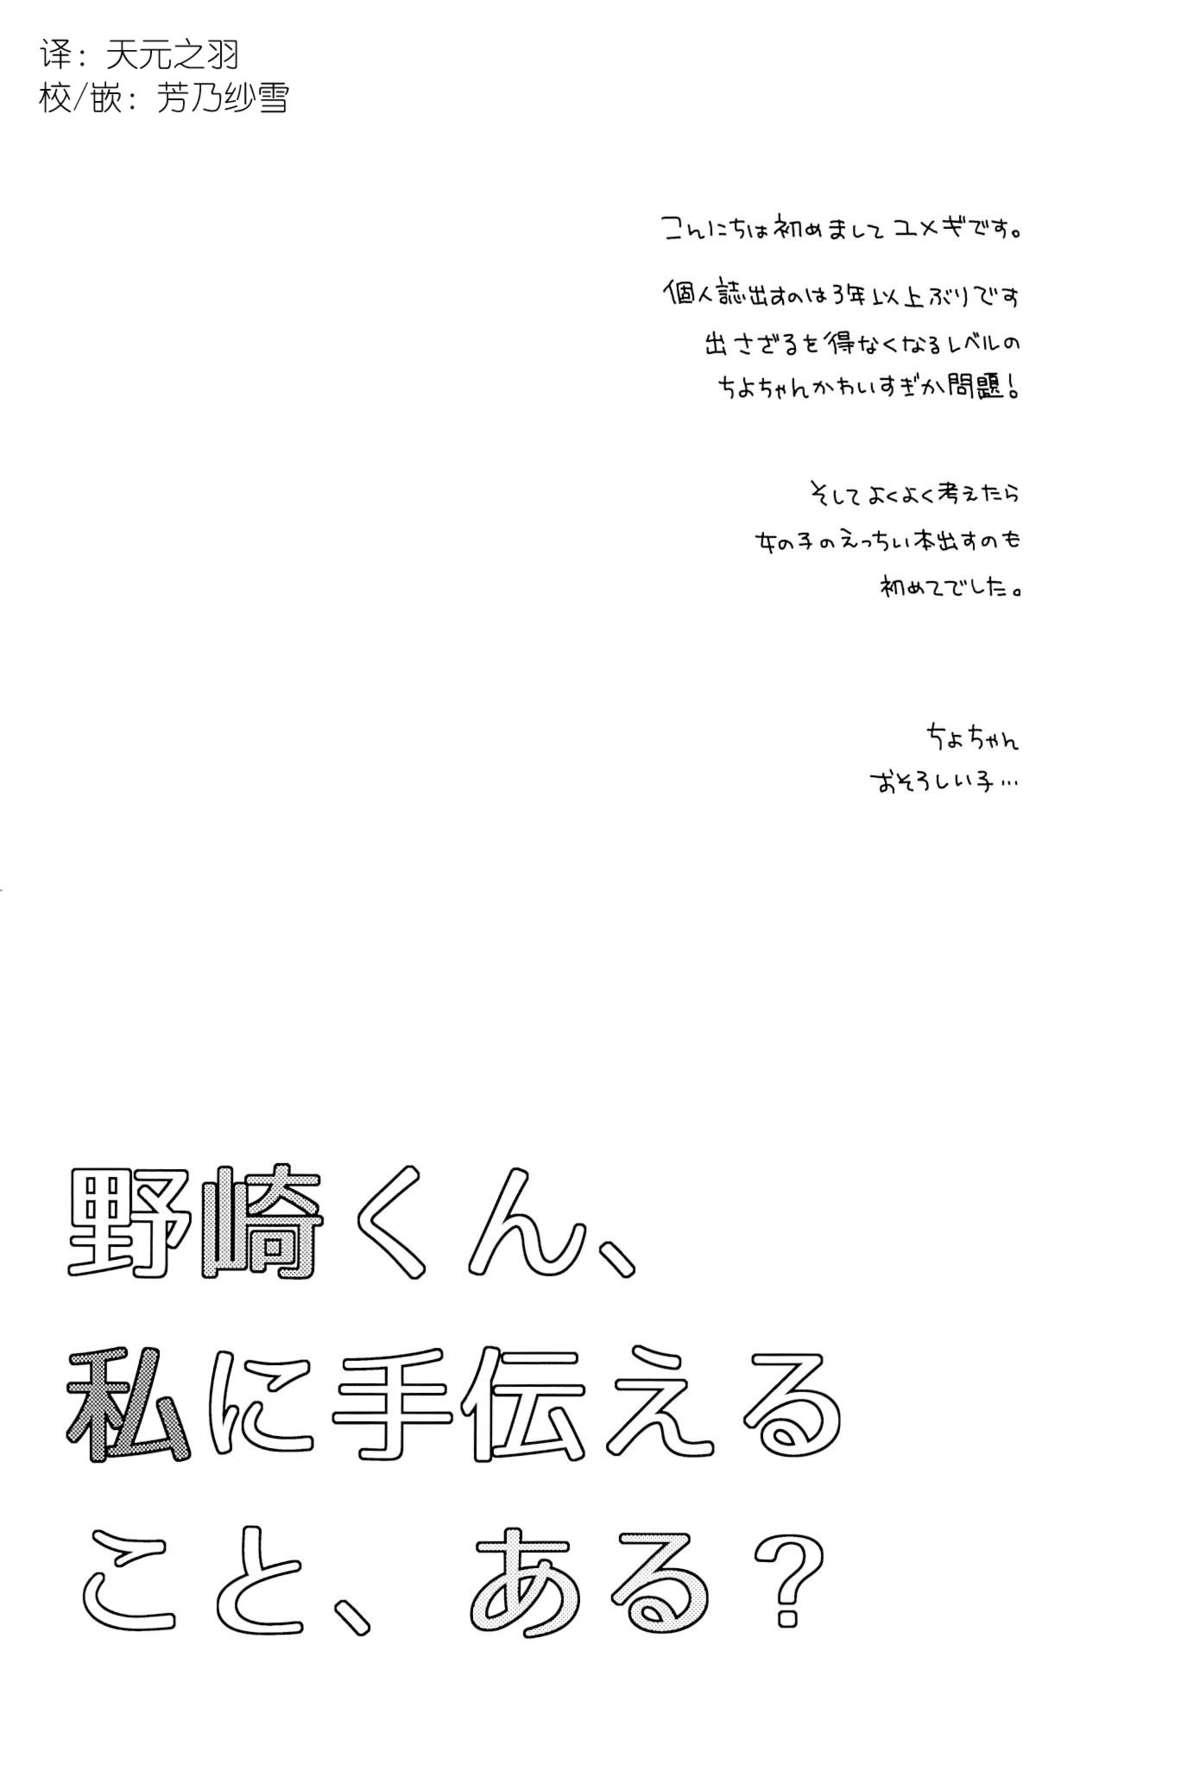 Roleplay Nozaki-kun, Watashi ni Tetsudaeru koto, Aru? - Gekkan shoujo nozaki kun Teasing - Page 3